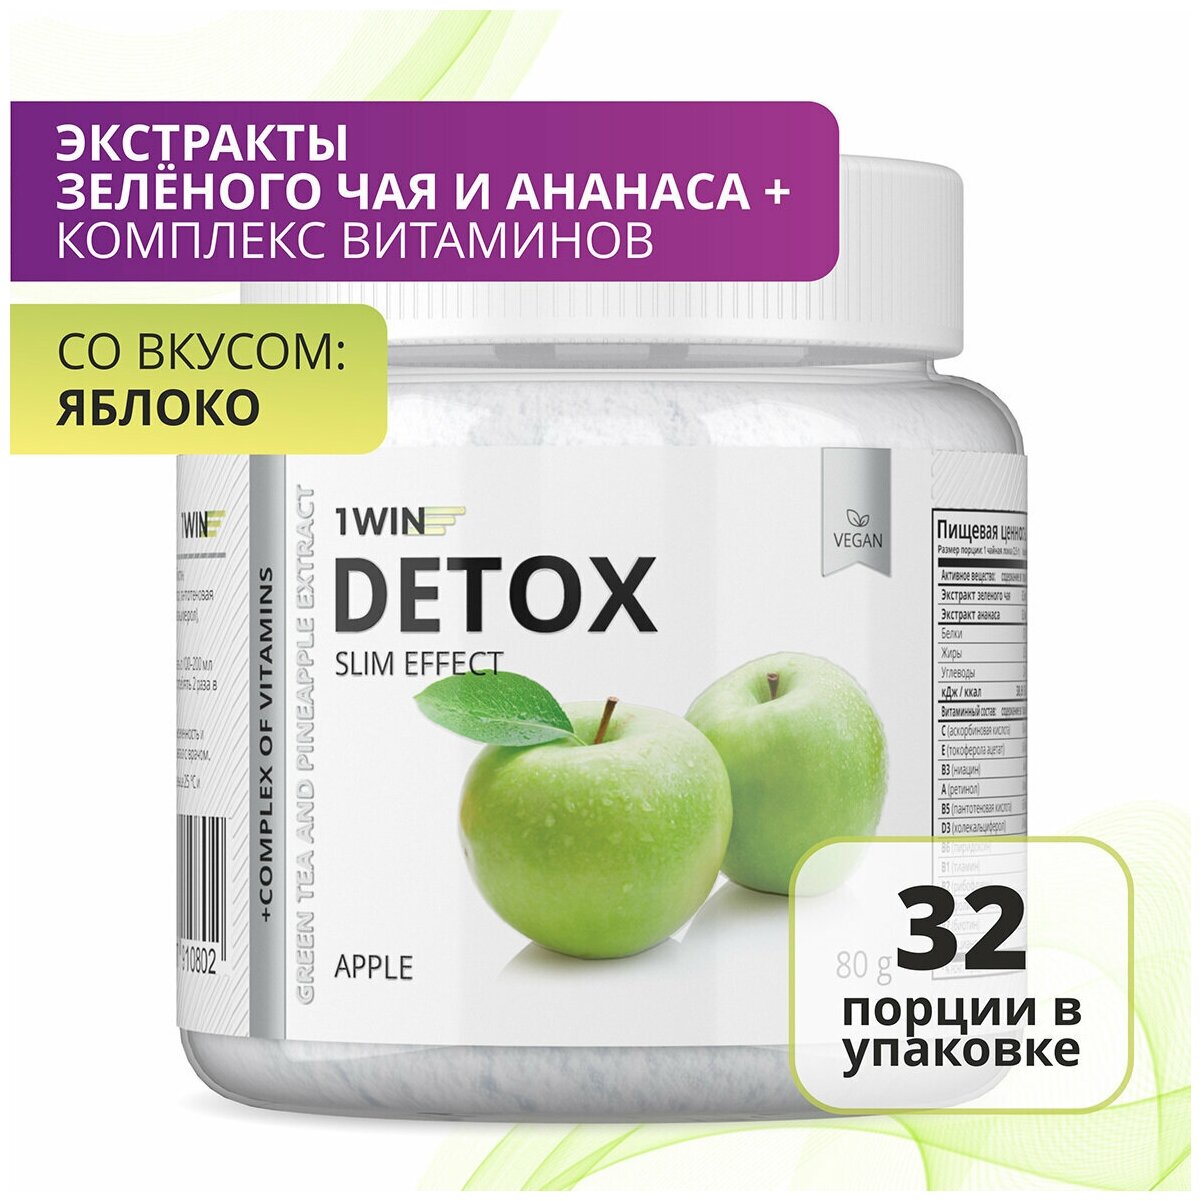 1WIN Детокс с экстрактом зеленого чая и ананаса Detox Slim Effect, Яблоко, 32 порции